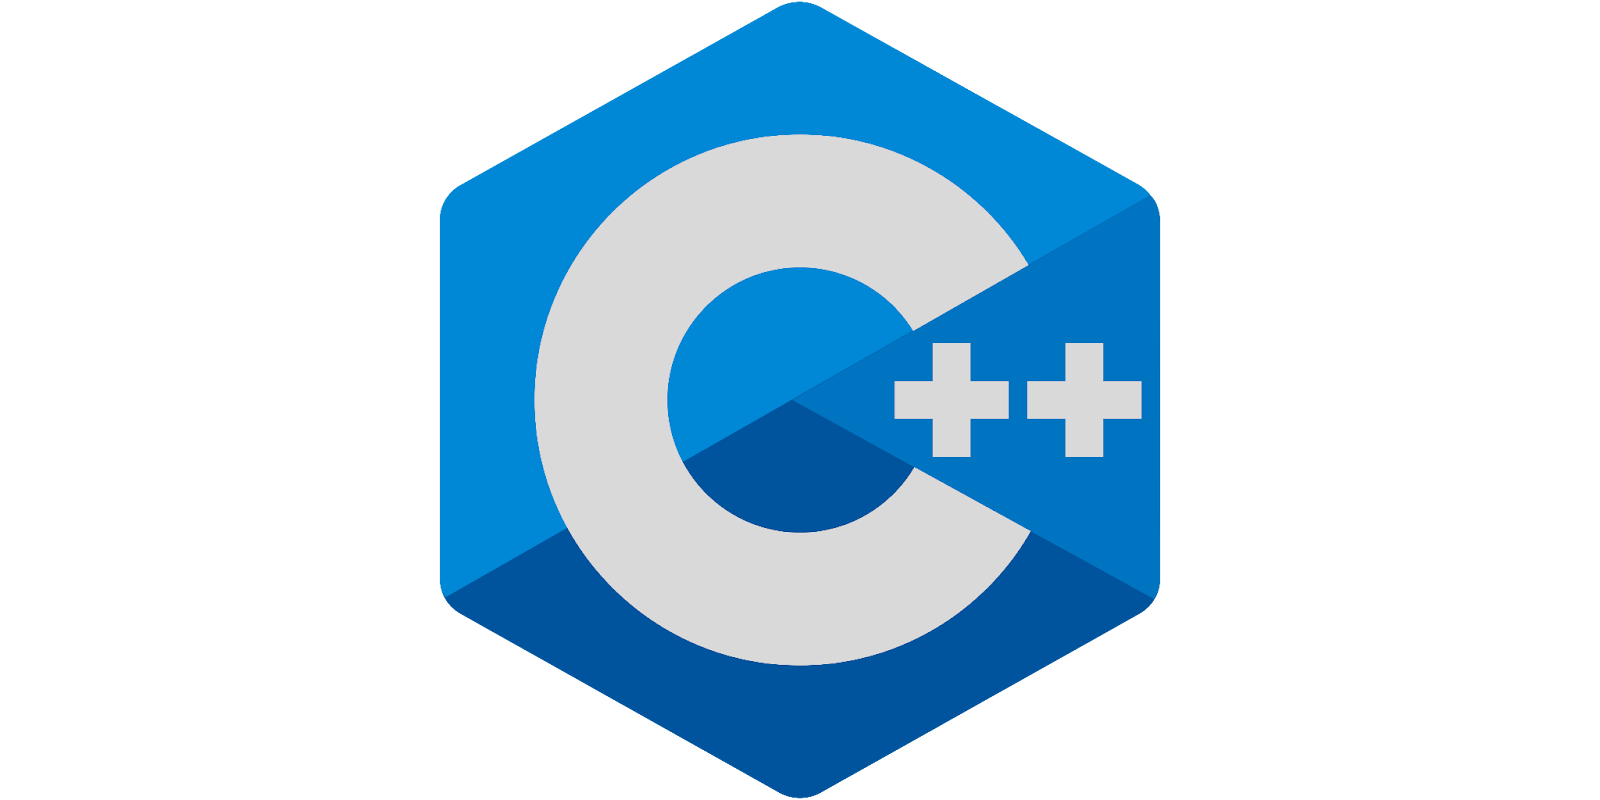 C ++ language